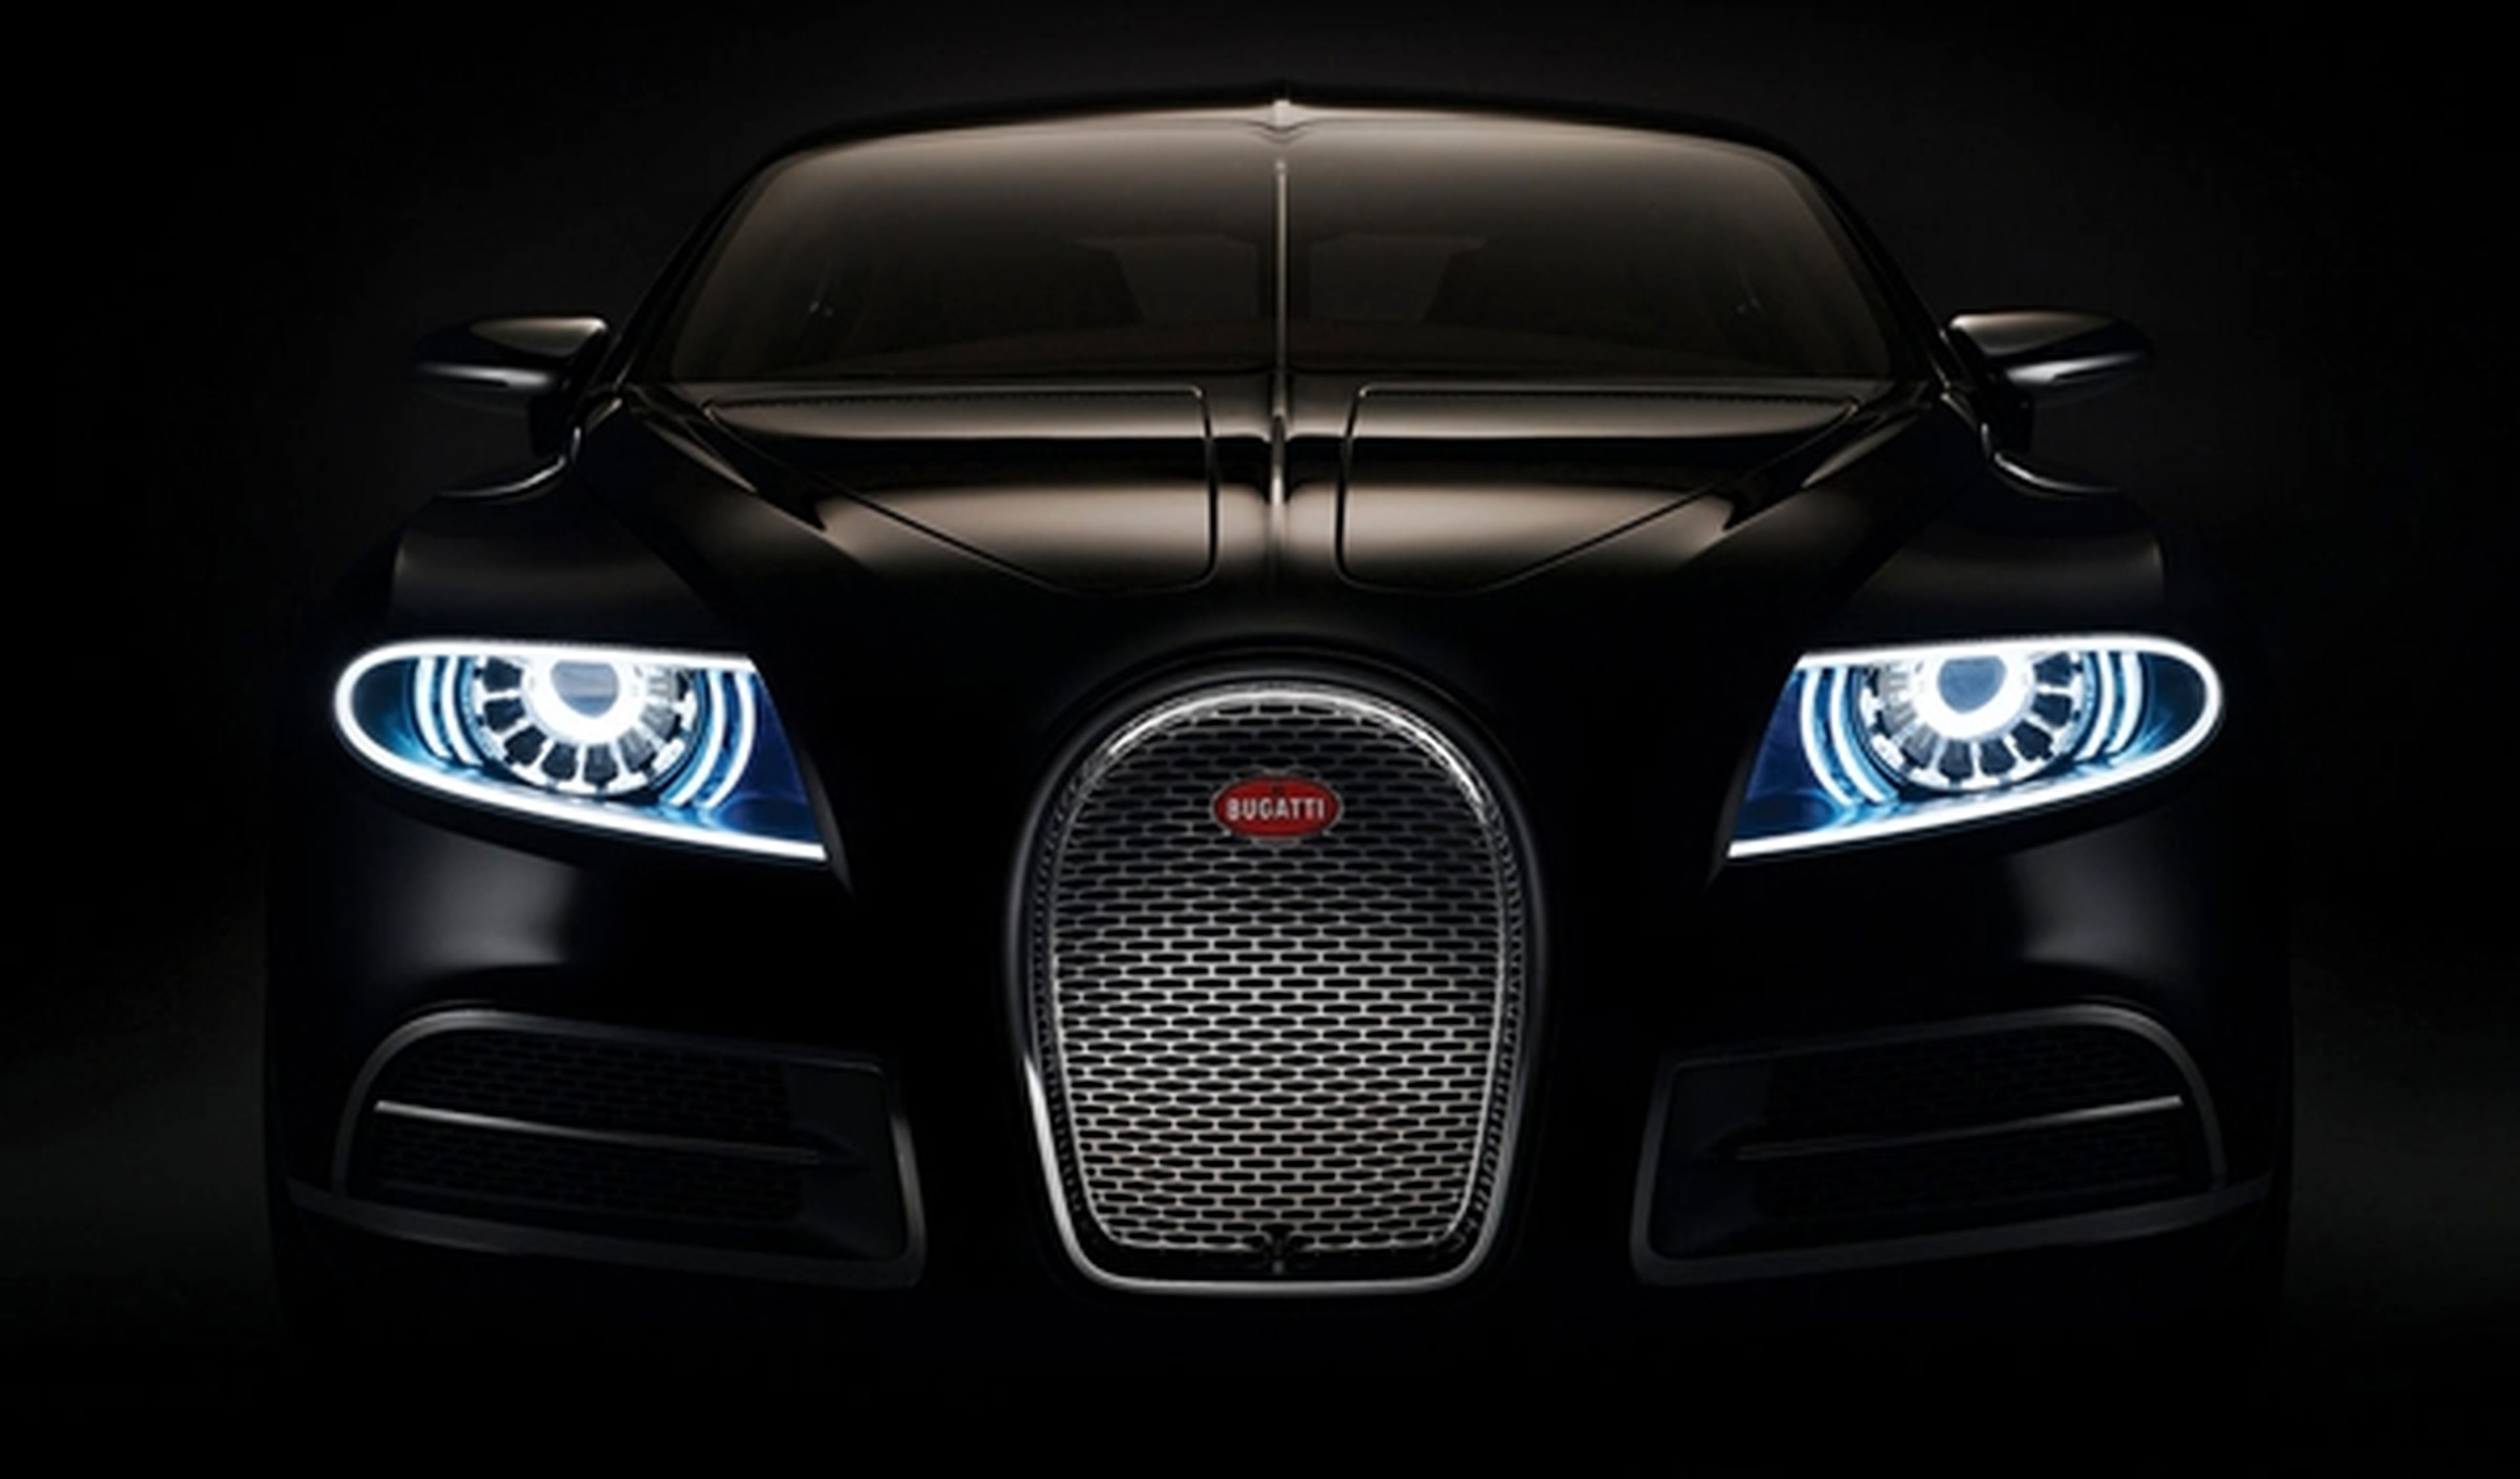 Este era el Bugatti Galibier, una lujosa berlina cuatro puertas presentada en 2009